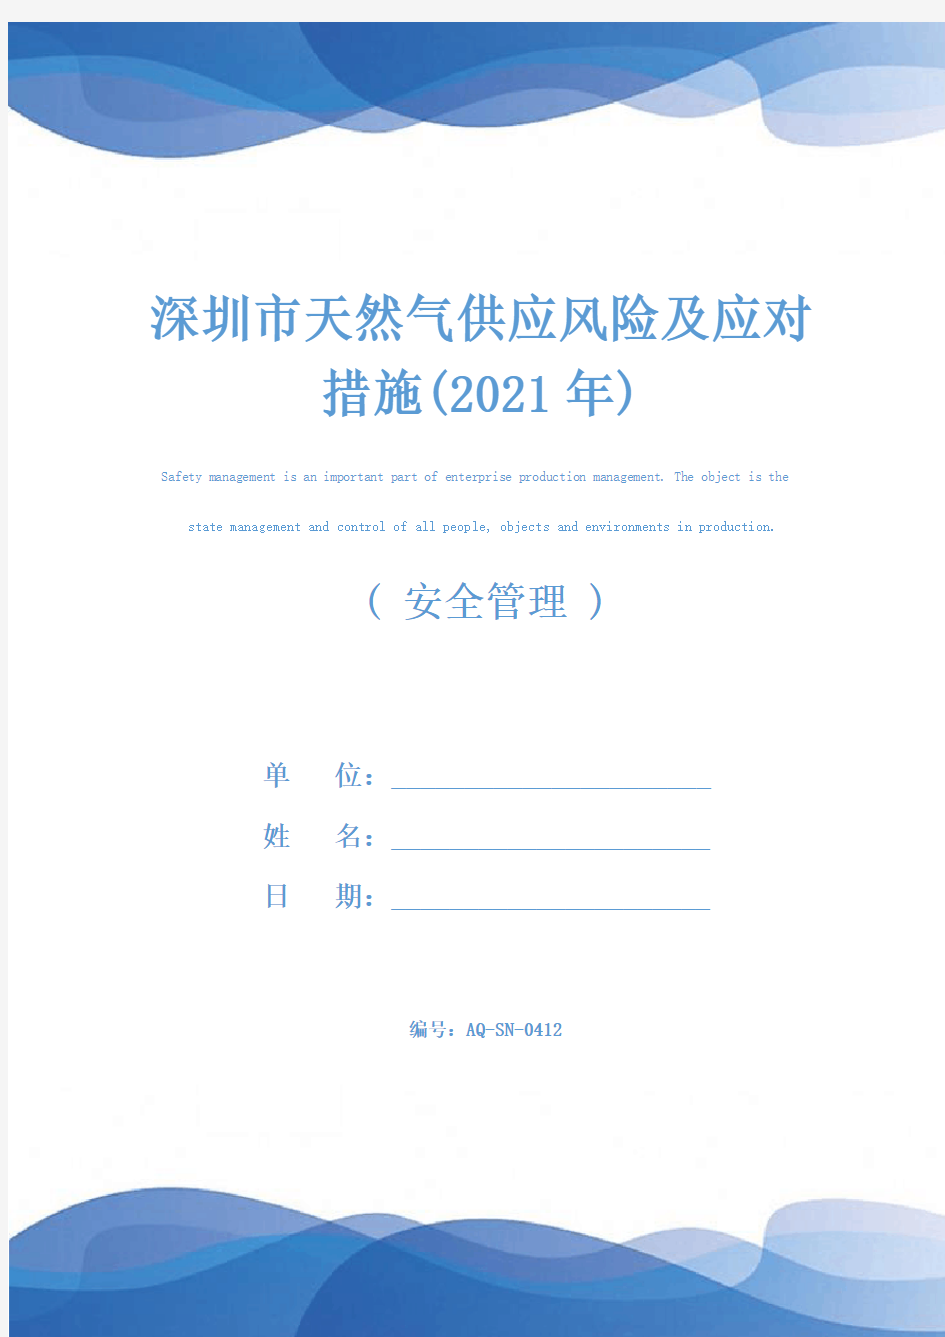 深圳市天然气供应风险及应对措施(2021年)